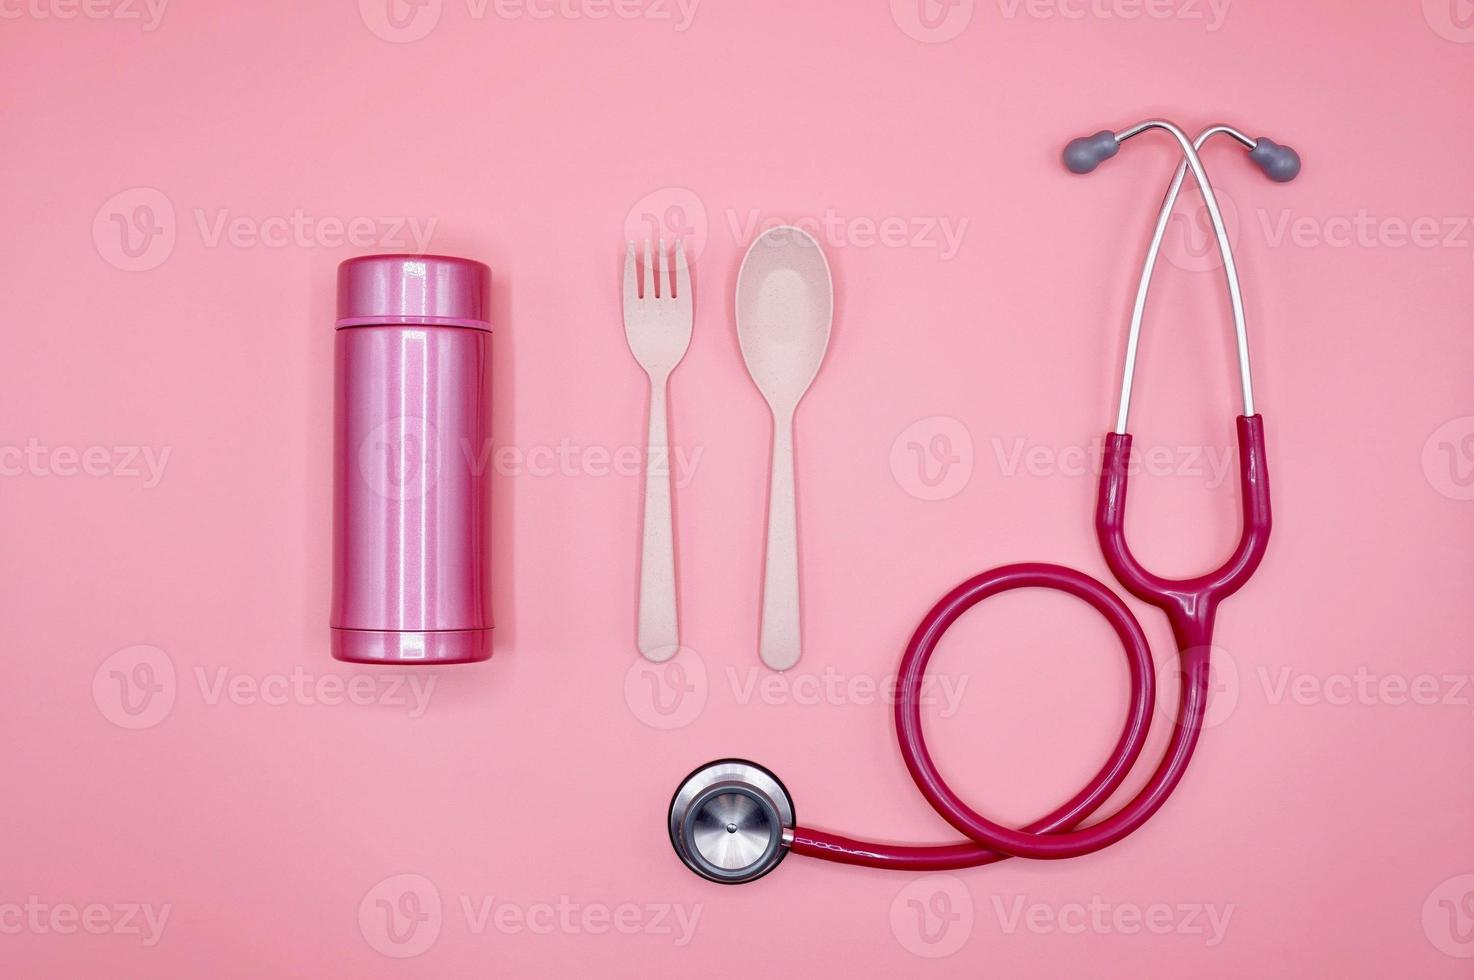 uno stetoscopio rosa, cucchiaio, forchetta e bottiglia termica su sfondo rosa, layout piatto foto